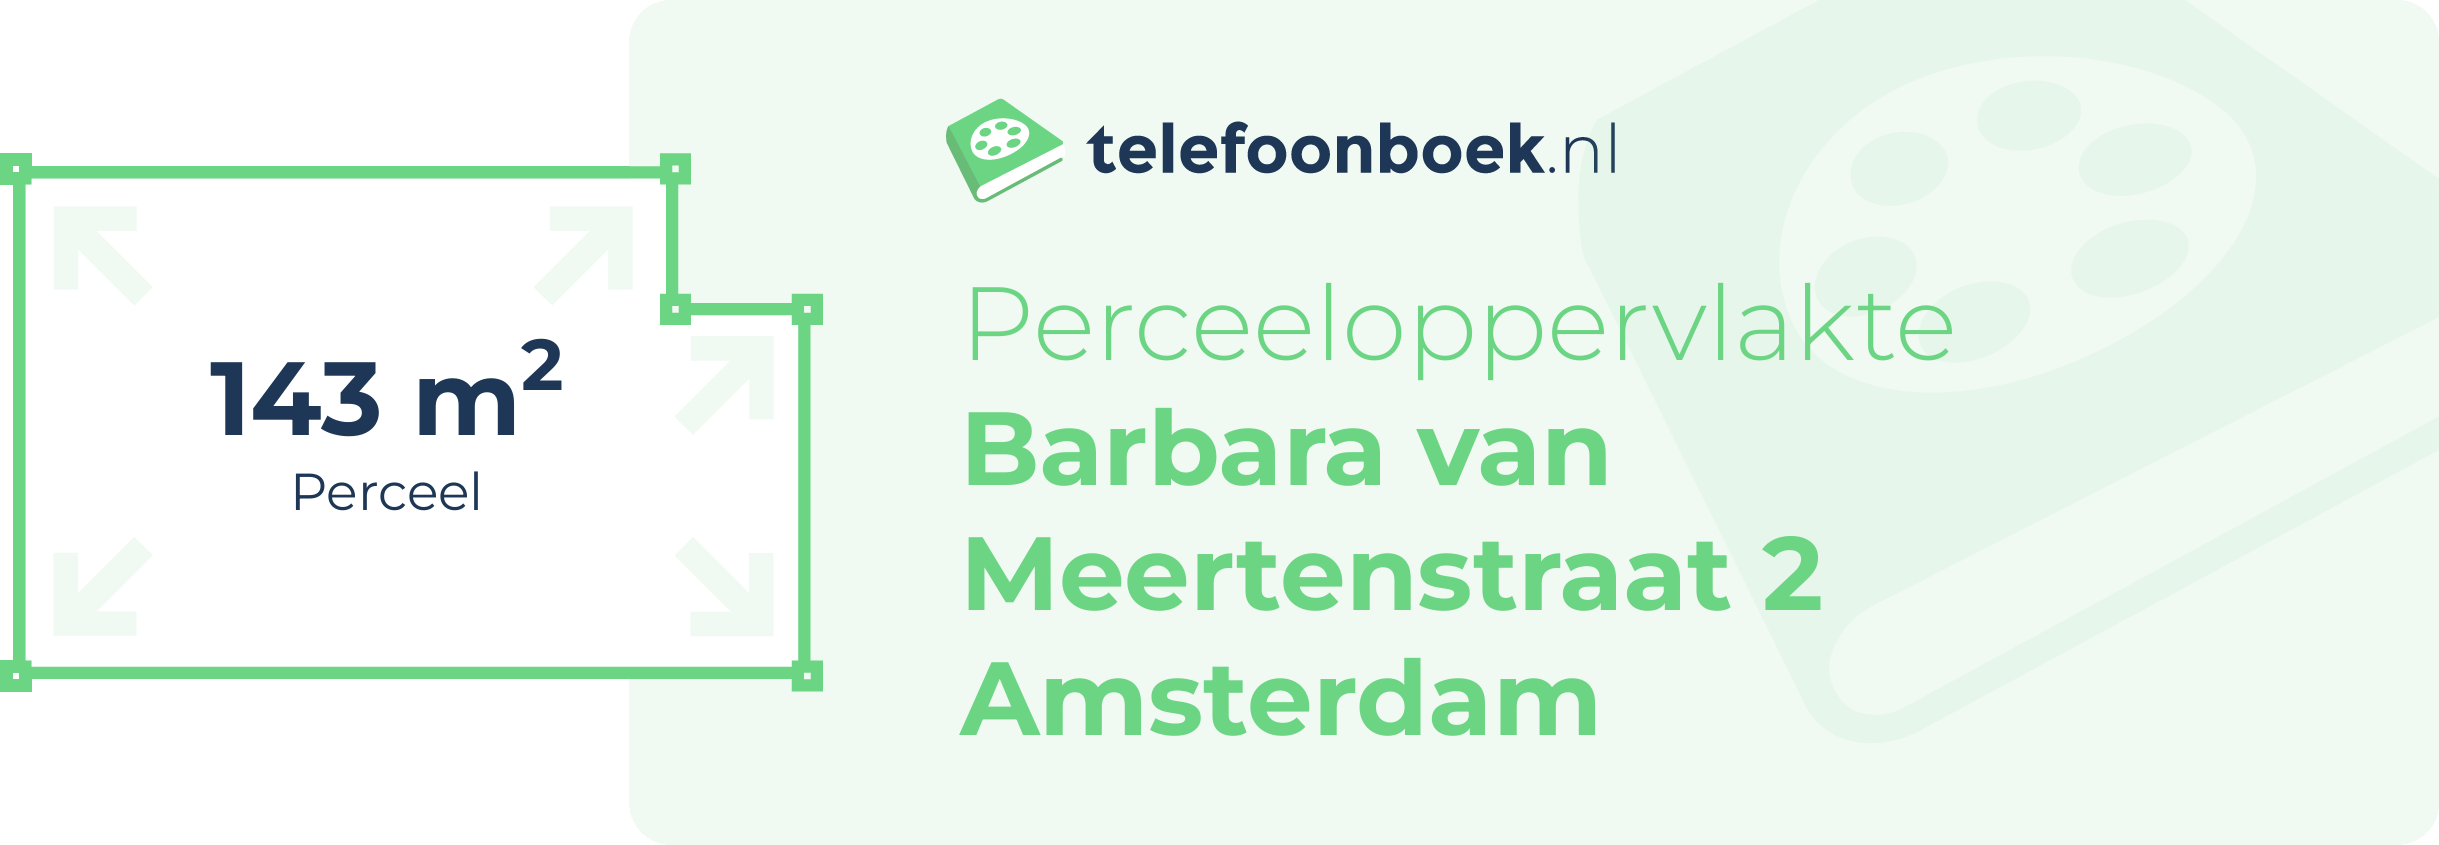 Perceeloppervlakte Barbara Van Meertenstraat 2 Amsterdam